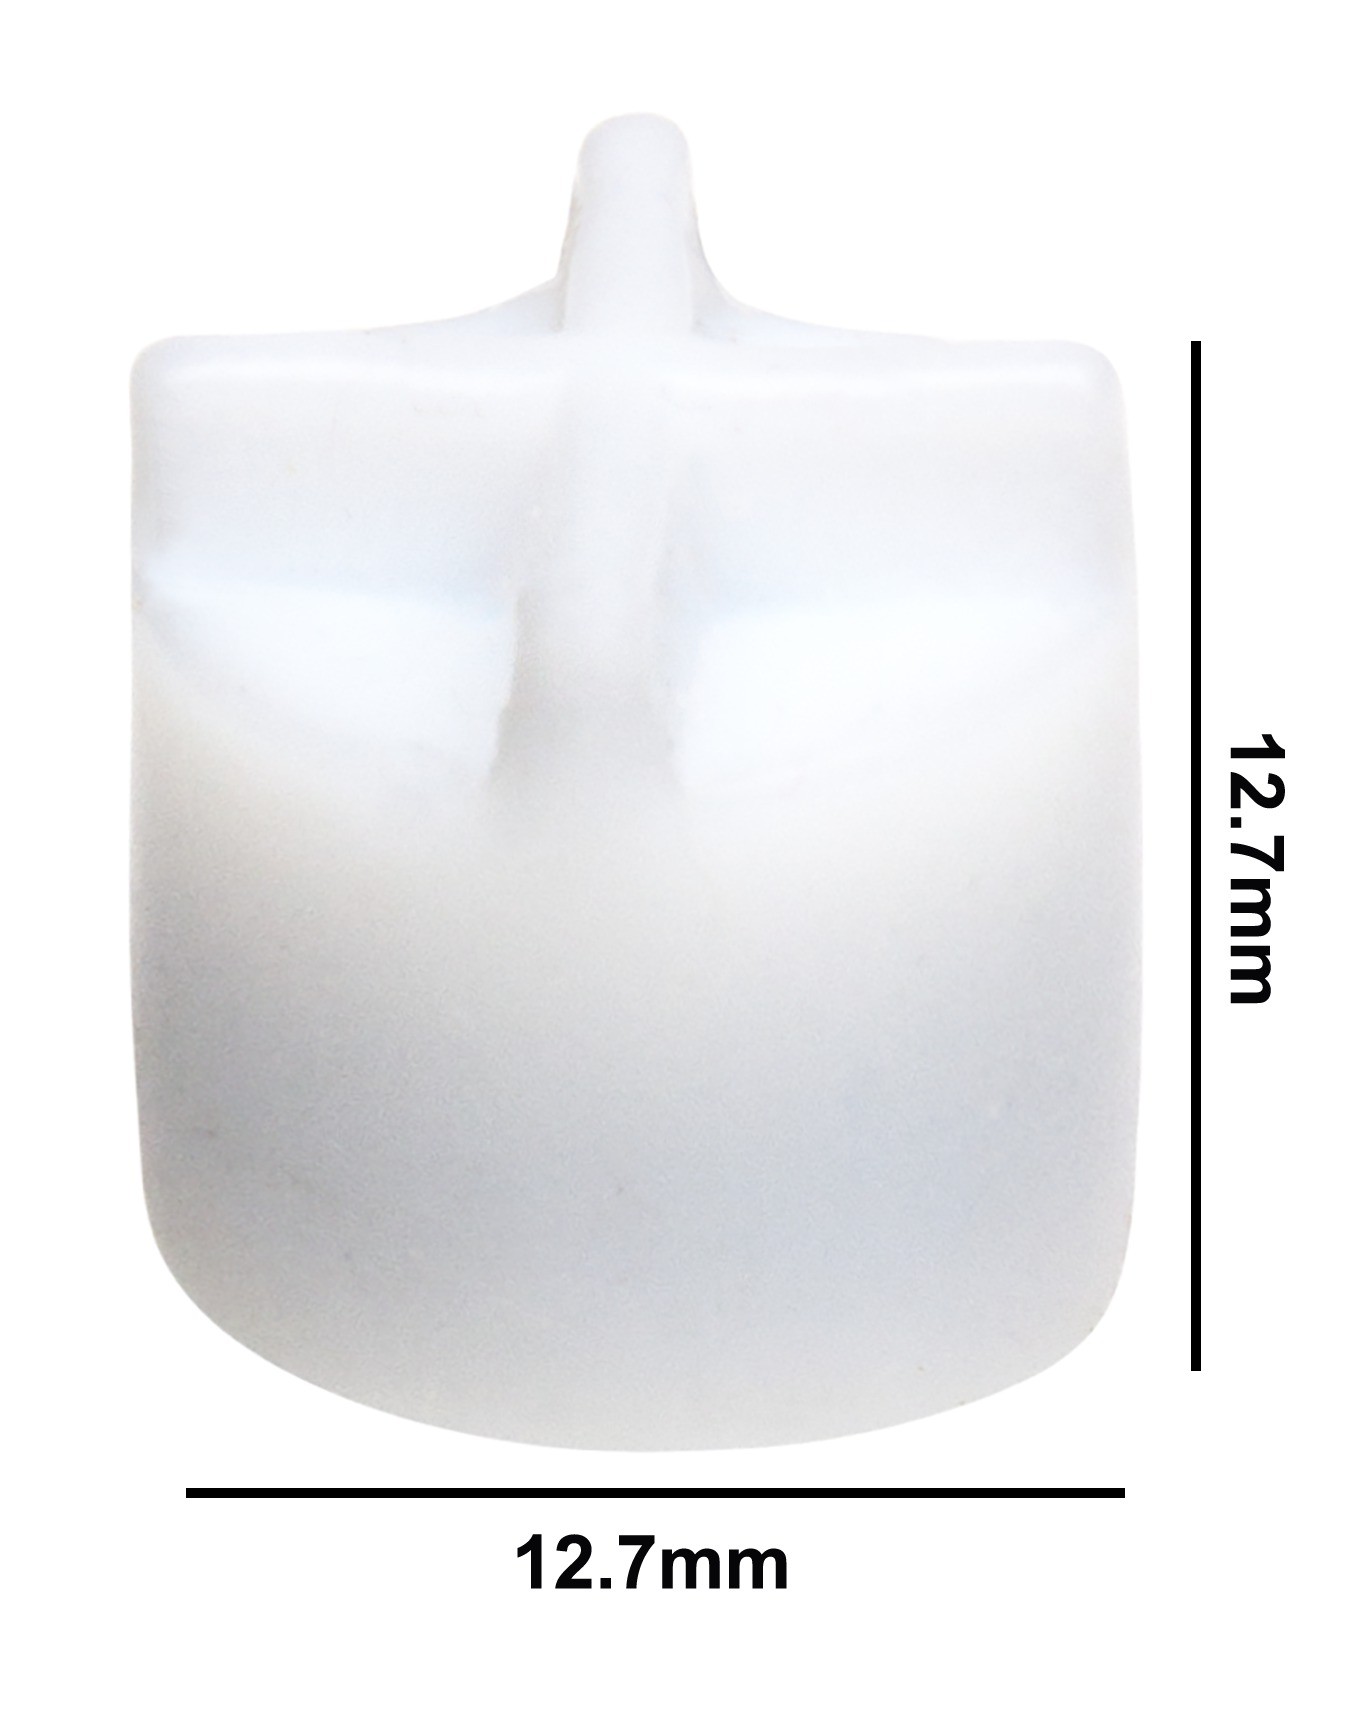 SP Bel-Art Spinfin Teflon Magnetic Stirring Bar; 12.7 x 12.7mm, White